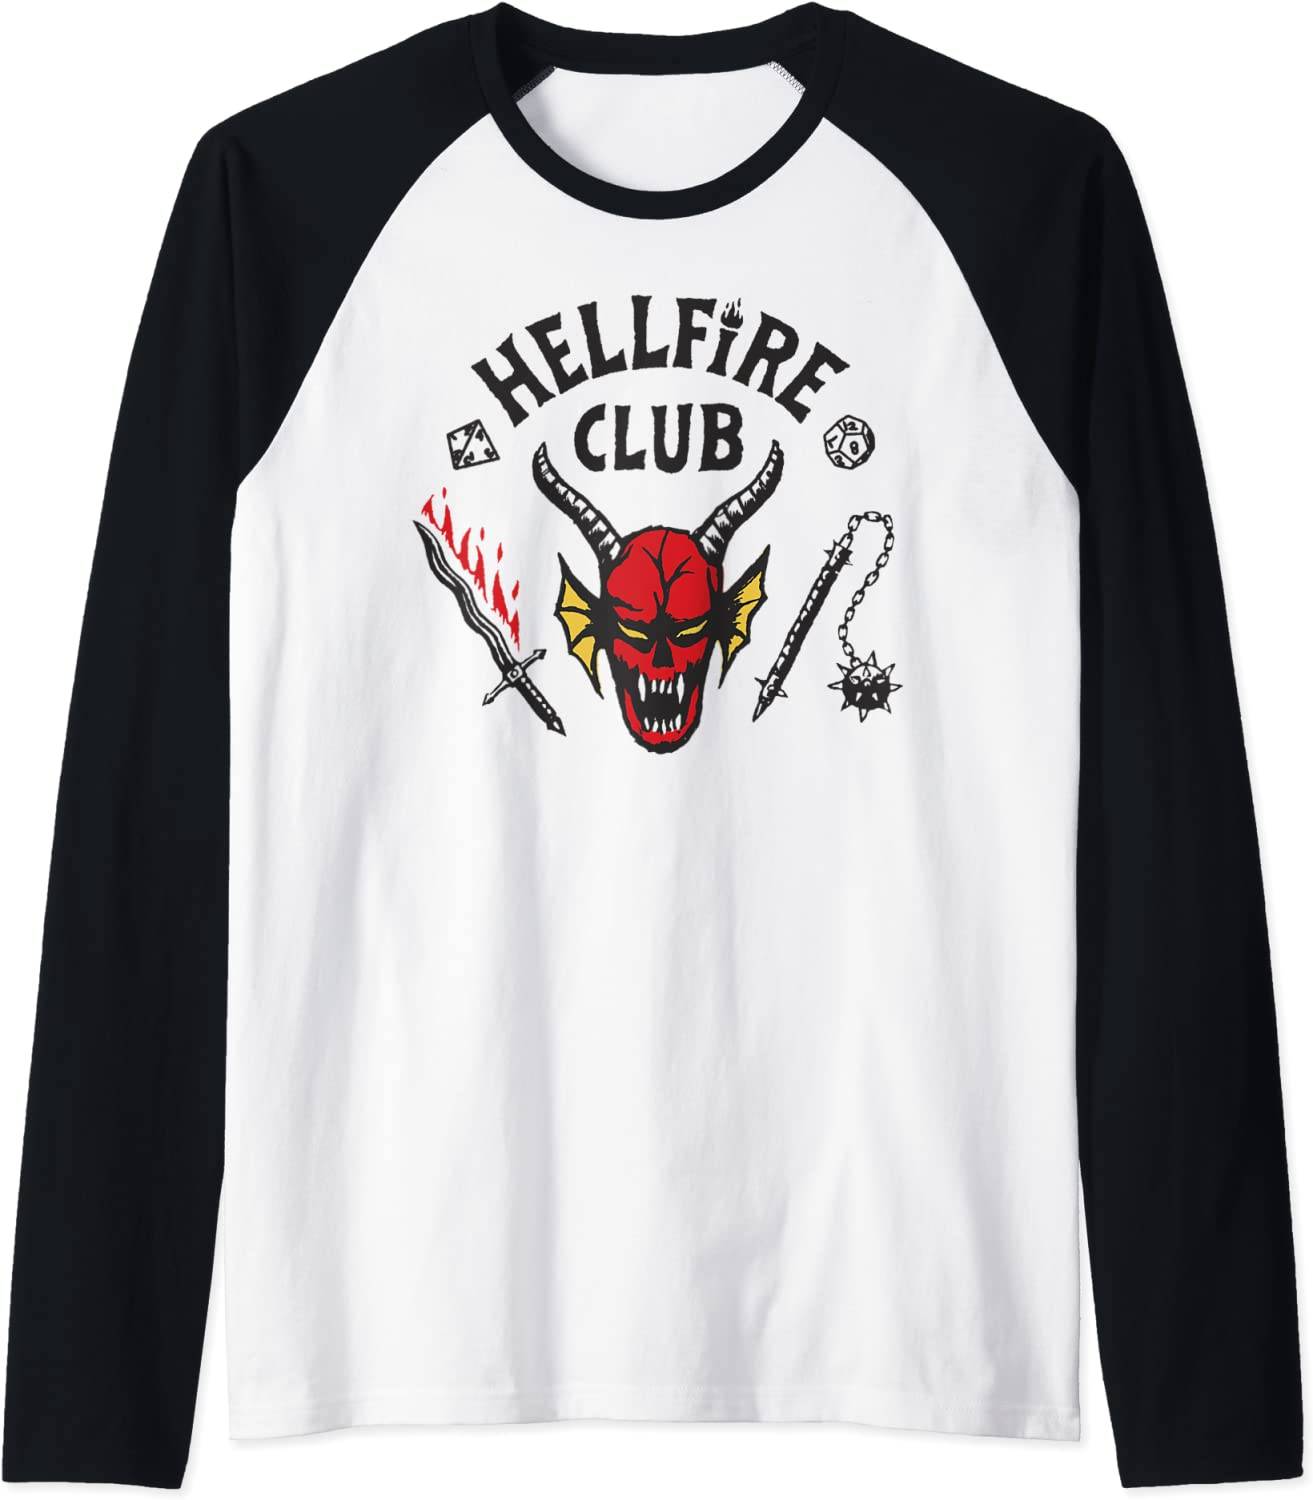 Hellfire Club tshirt replica from Stranger Things season 4